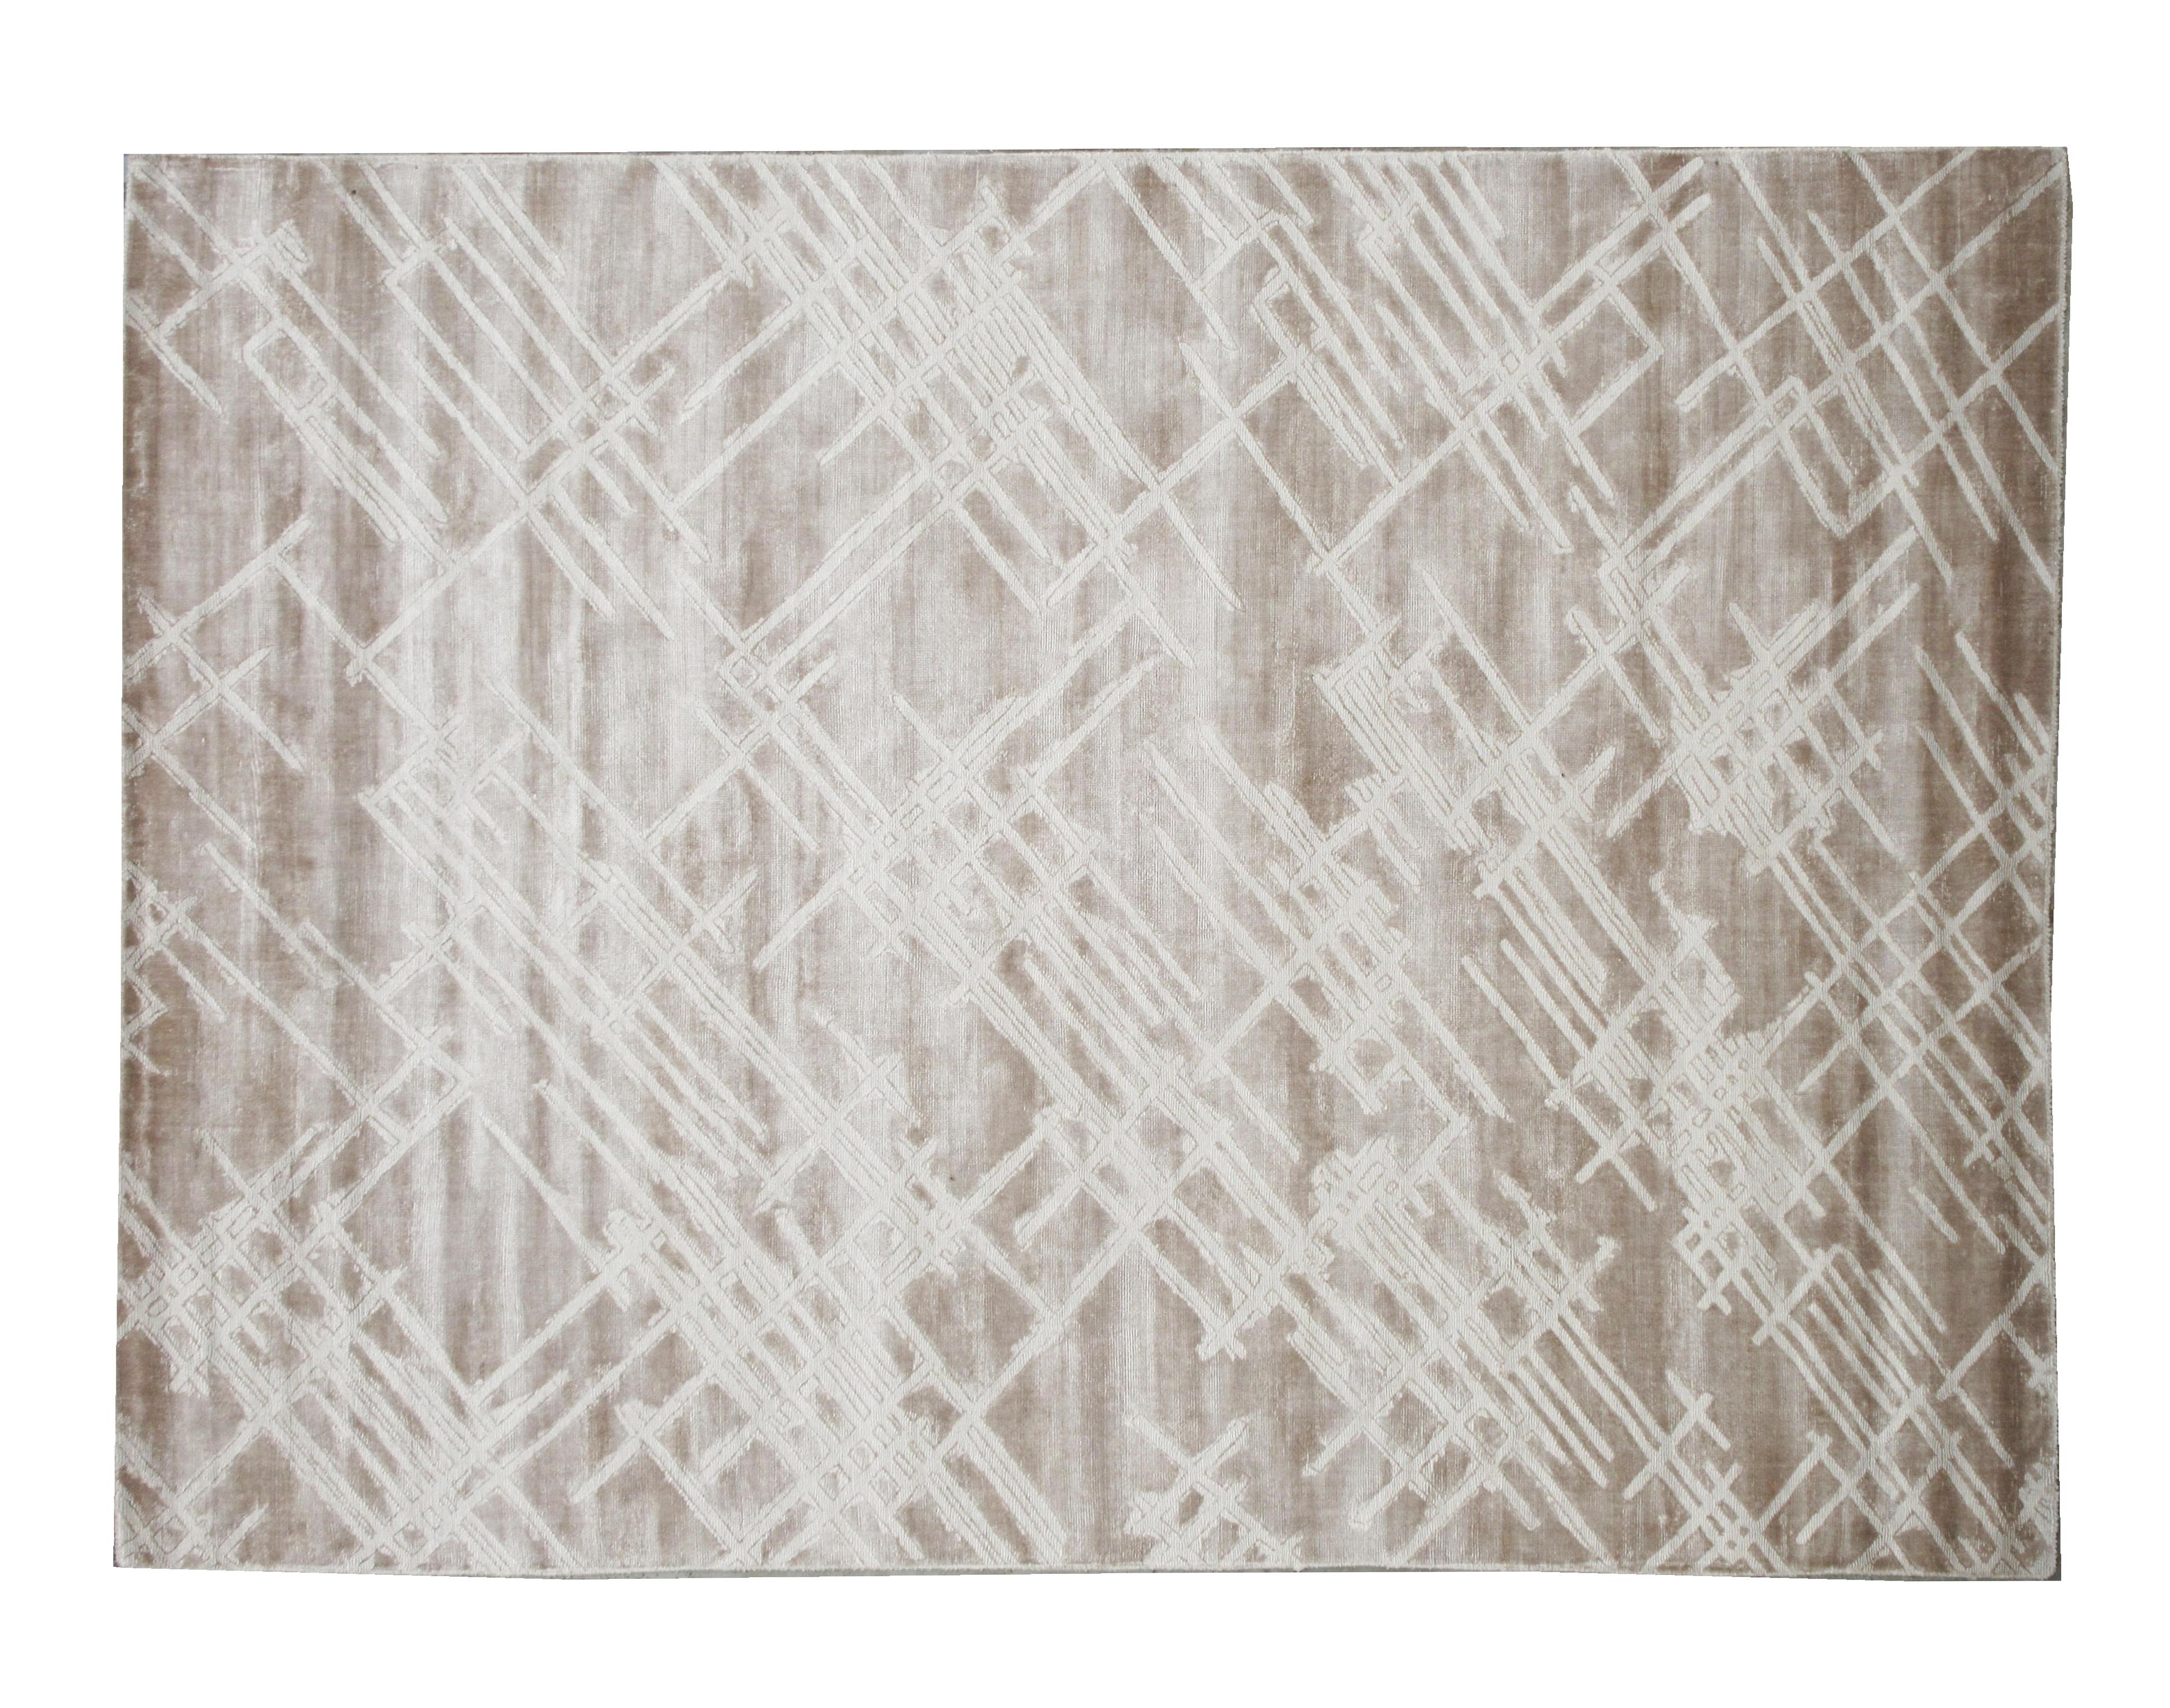 Des poils de soie artistique faits à la main sur une base de coton.

Design texturé

Dimensions : 8'11